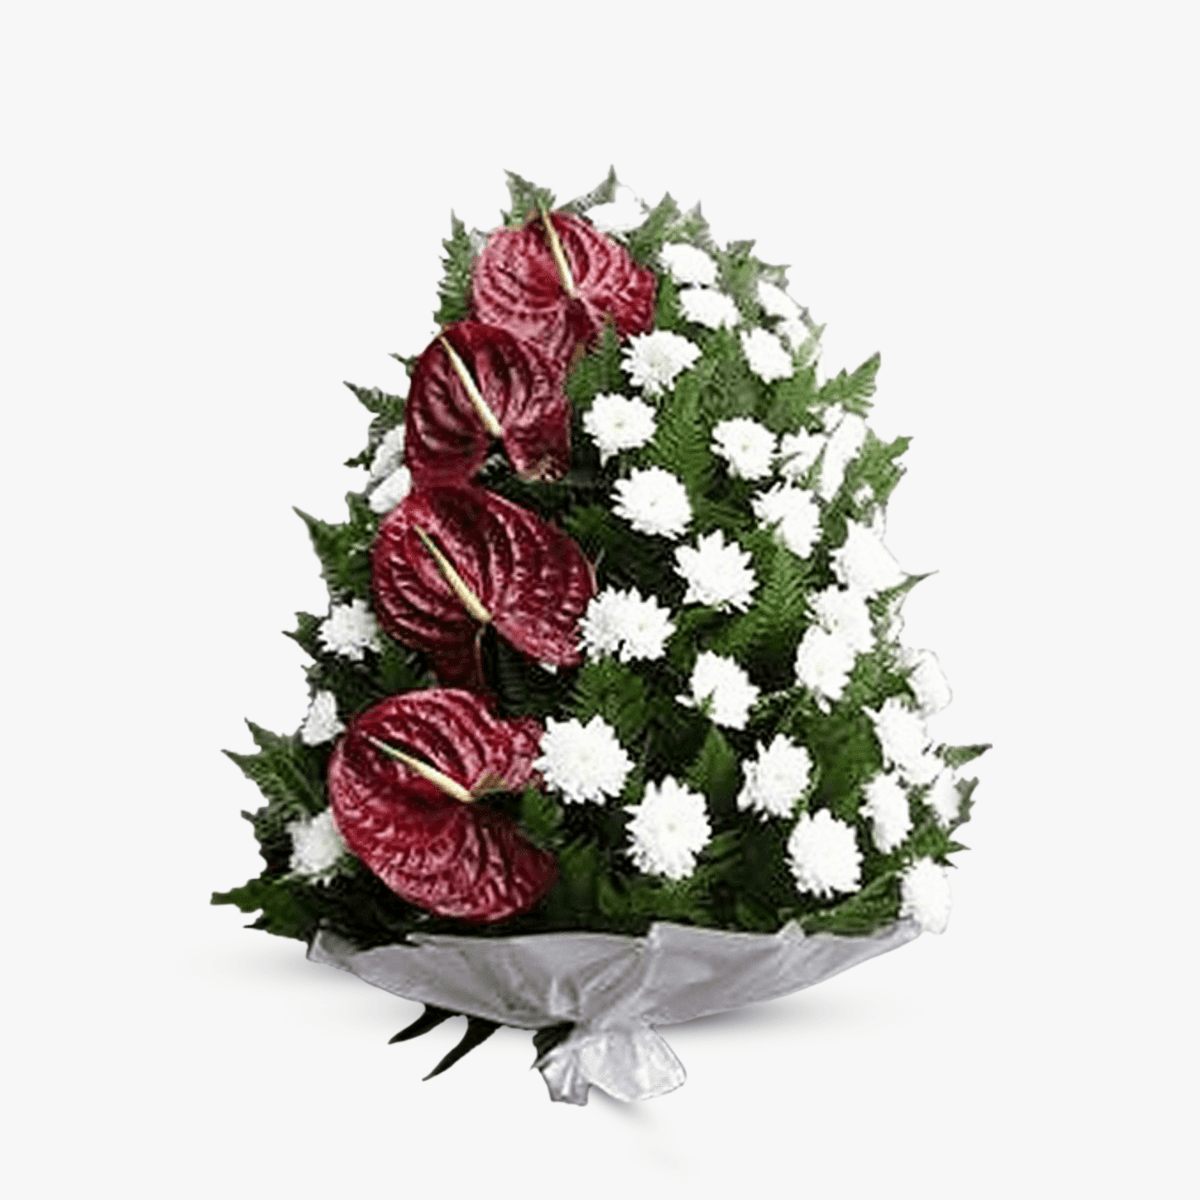 Jerba funerara cu crizanteme albe si anthurium rosu - Standard